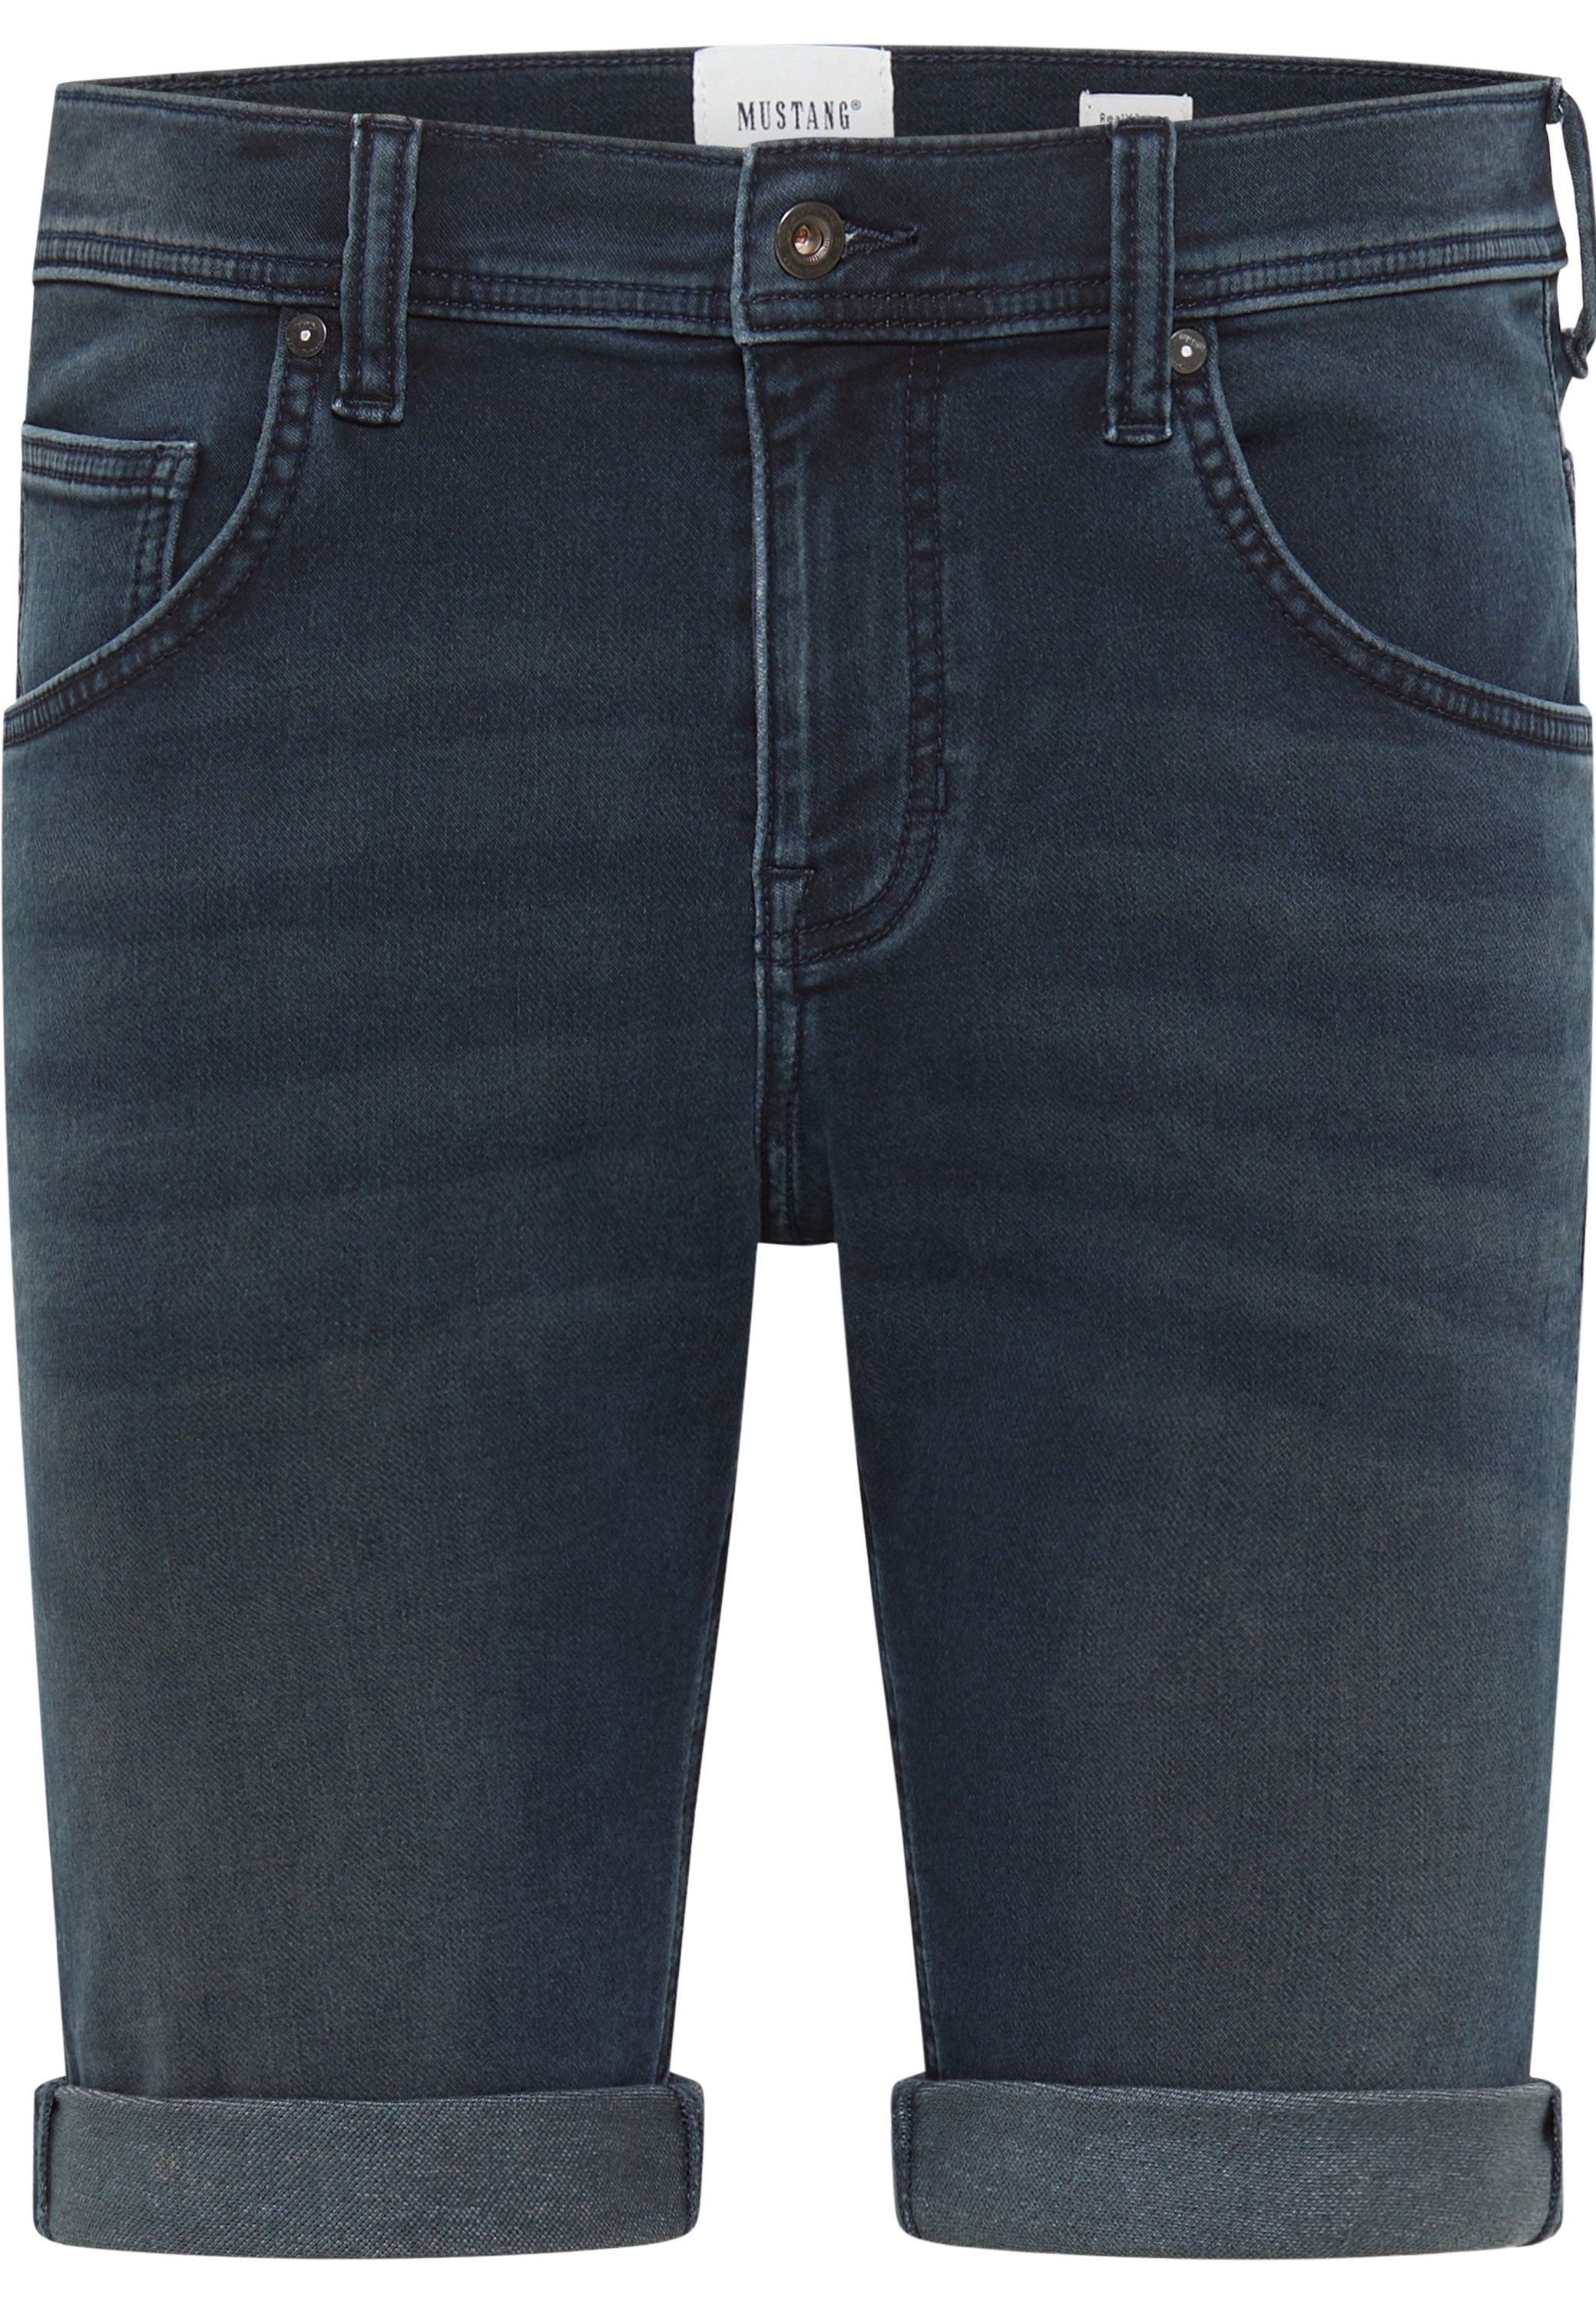 Hotpants Jeans online kaufen | OTTO Österreich | Jeansshorts